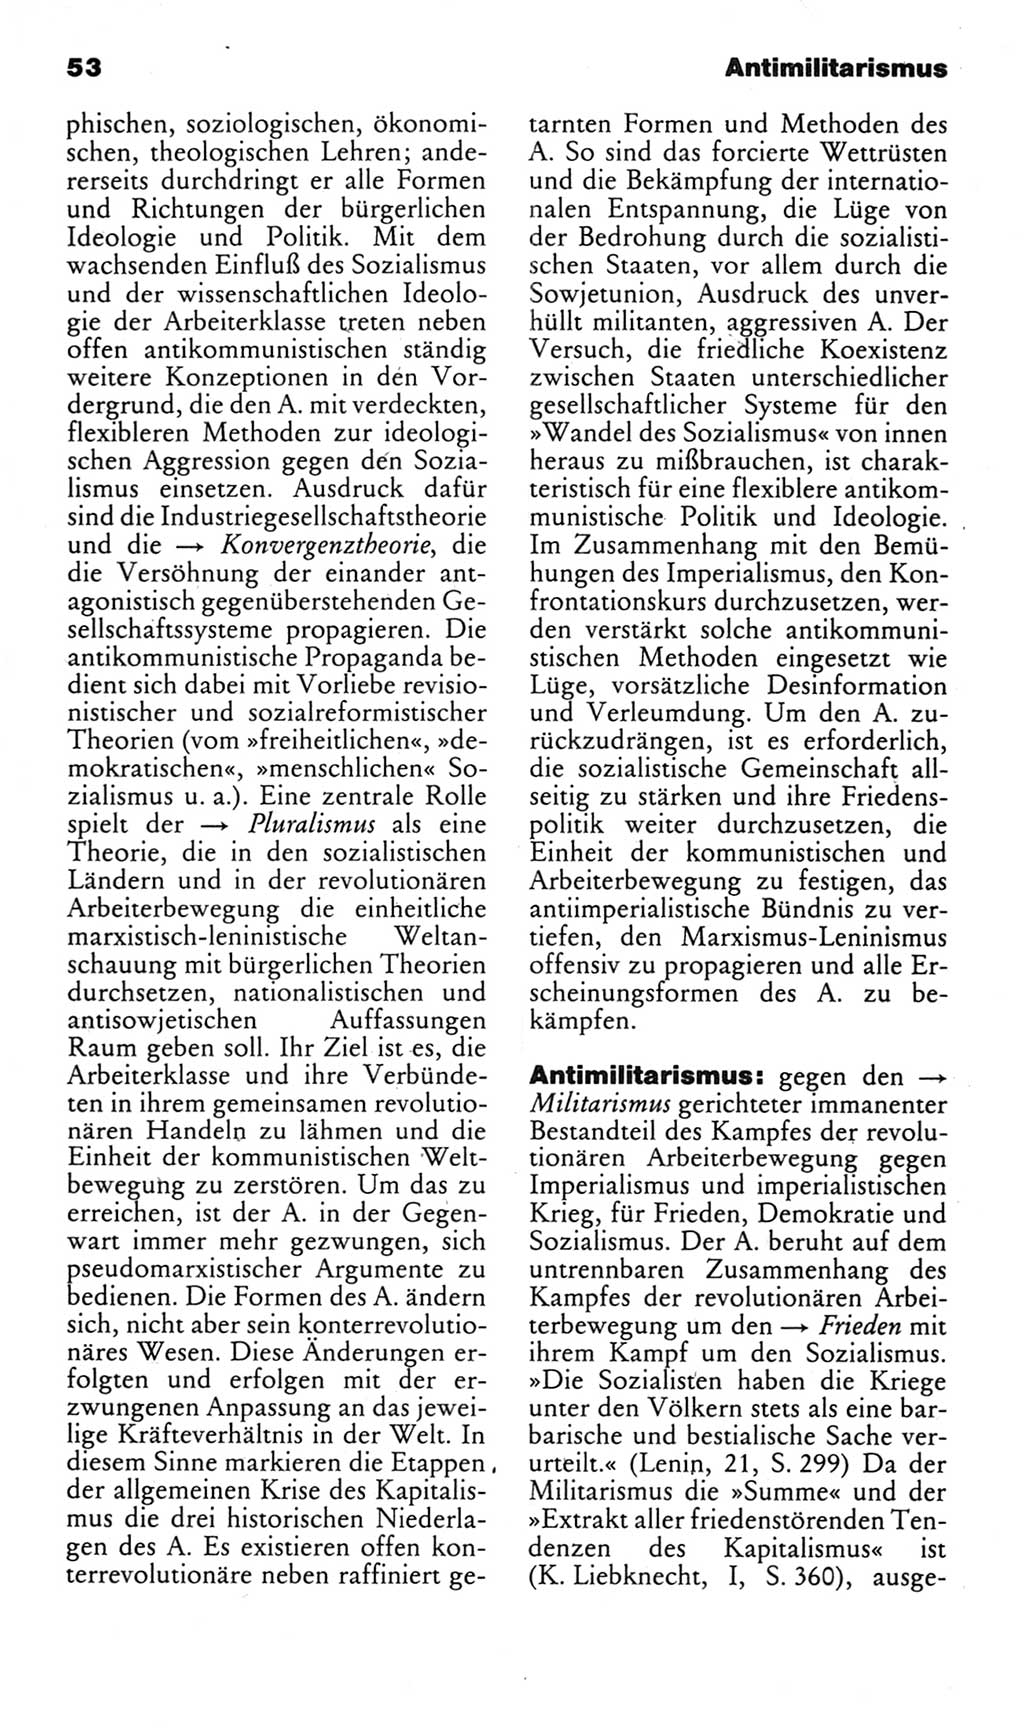 Kleines politisches Wörterbuch [Deutsche Demokratische Republik (DDR)] 1983, Seite 53 (Kl. pol. Wb. DDR 1983, S. 53)